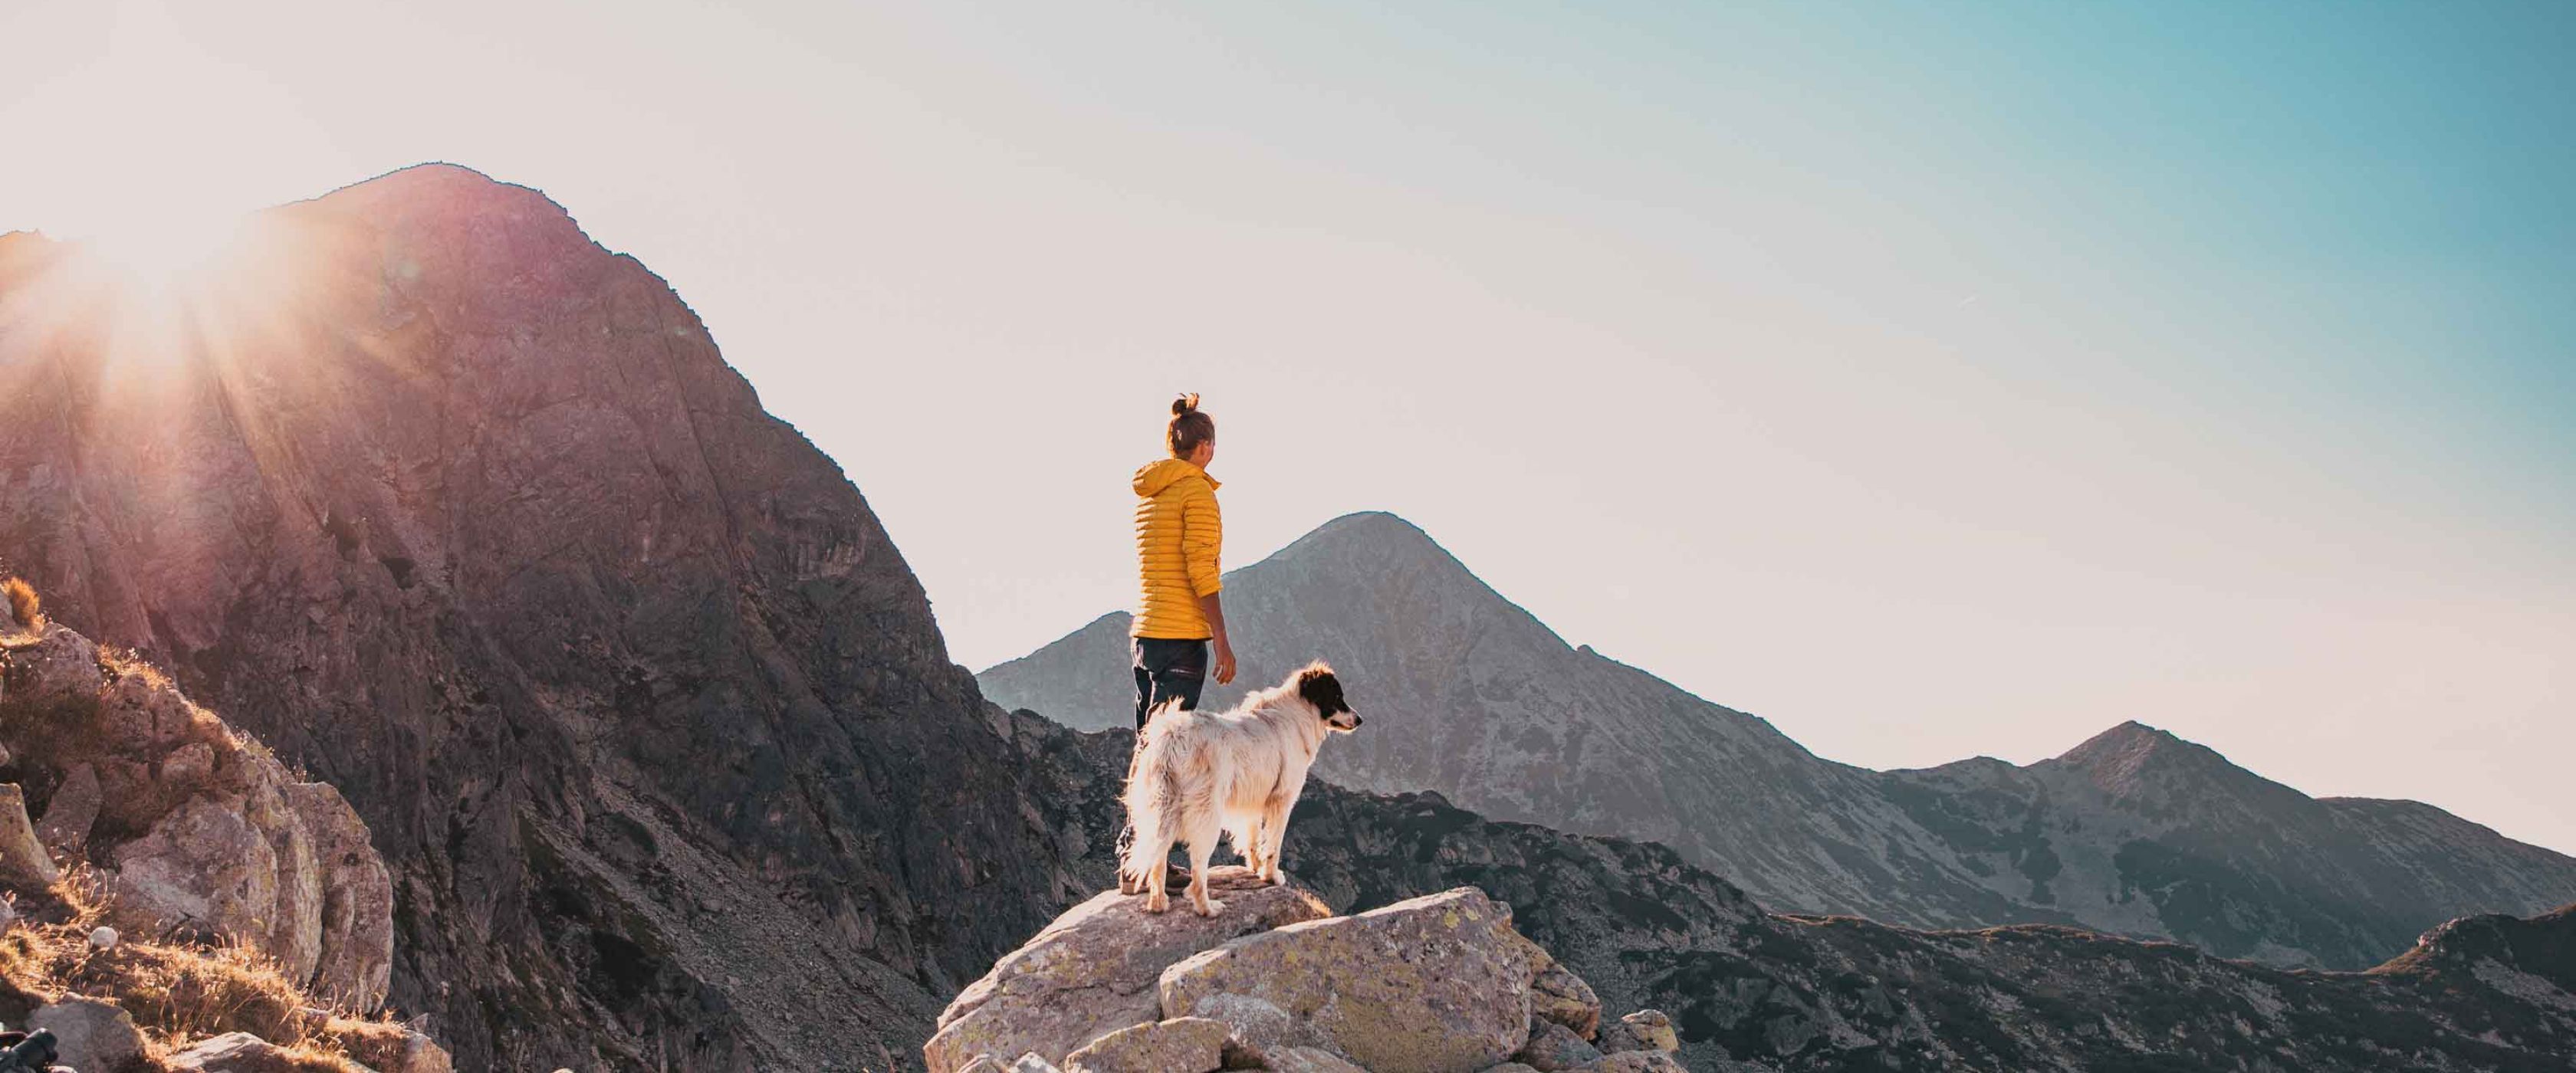 Woman and dog hiking